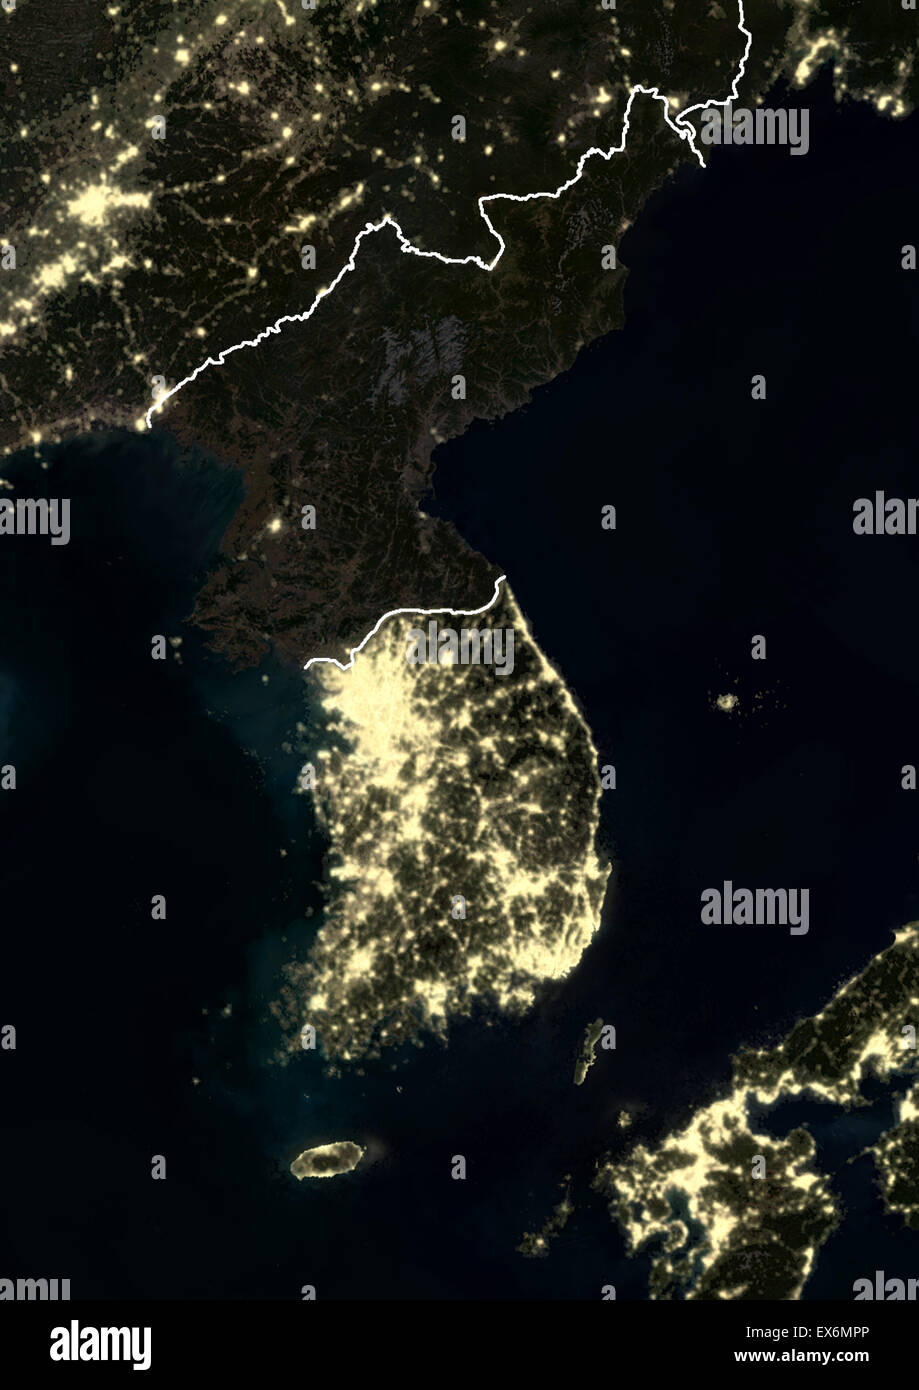 En la noche de la península de Corea en 2012. Esta imagen de satélite con las fronteras del país muestra las luces urbanas e industriales. Foto de stock